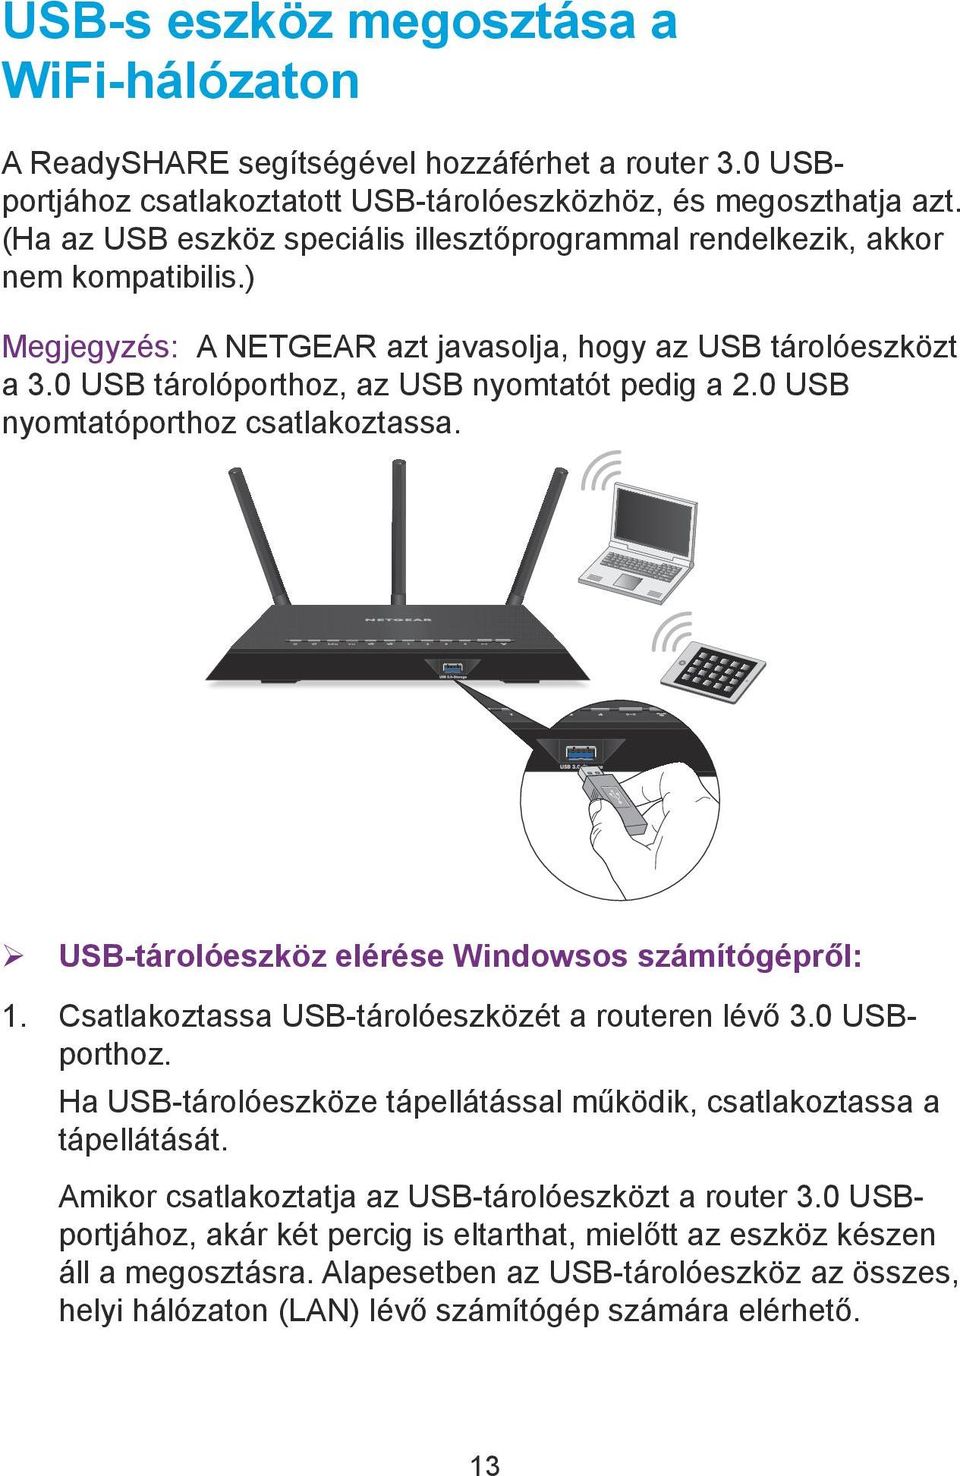 0 USB nyomtatóporthoz csatlakoztassa. ¾ USB-tárolóeszköz elérése Windowsos számítógépről: 1. Csatlakoztassa USB-tárolóeszközét a routeren lévő 3.0 USBporthoz.